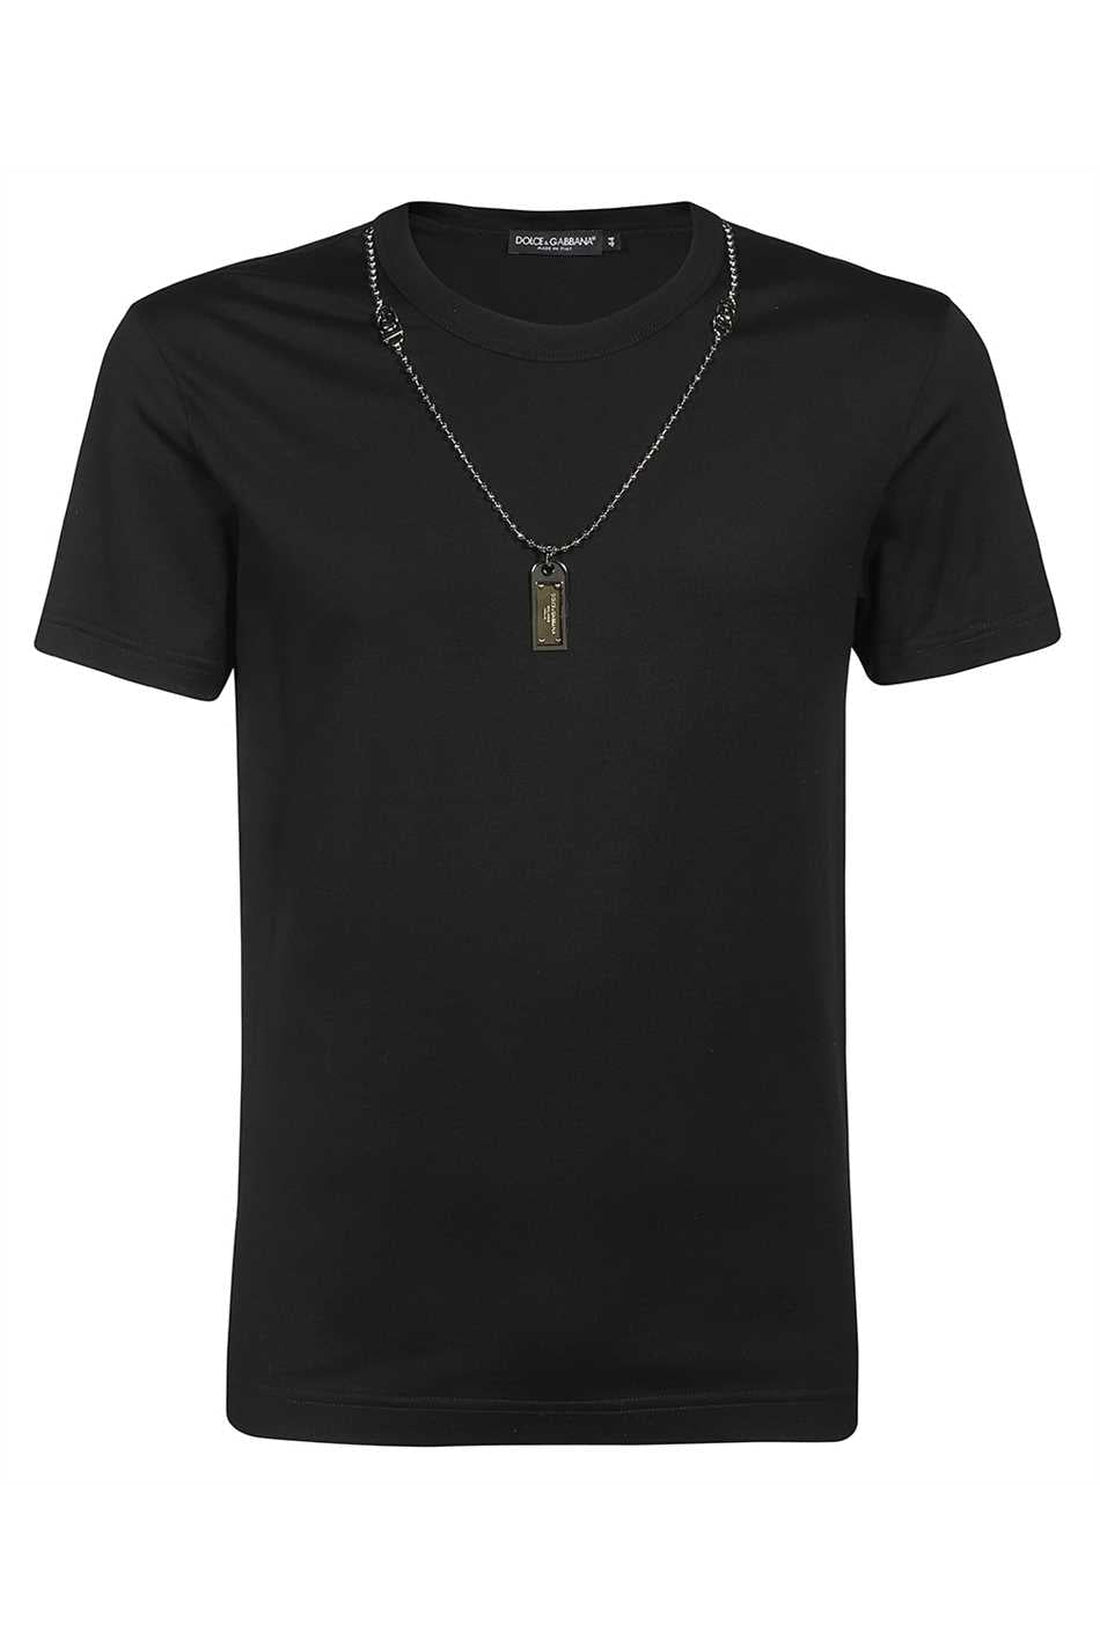 Dolce & Gabbana-OUTLET-SALE-Necklace detail cotton t-shirt-ARCHIVIST